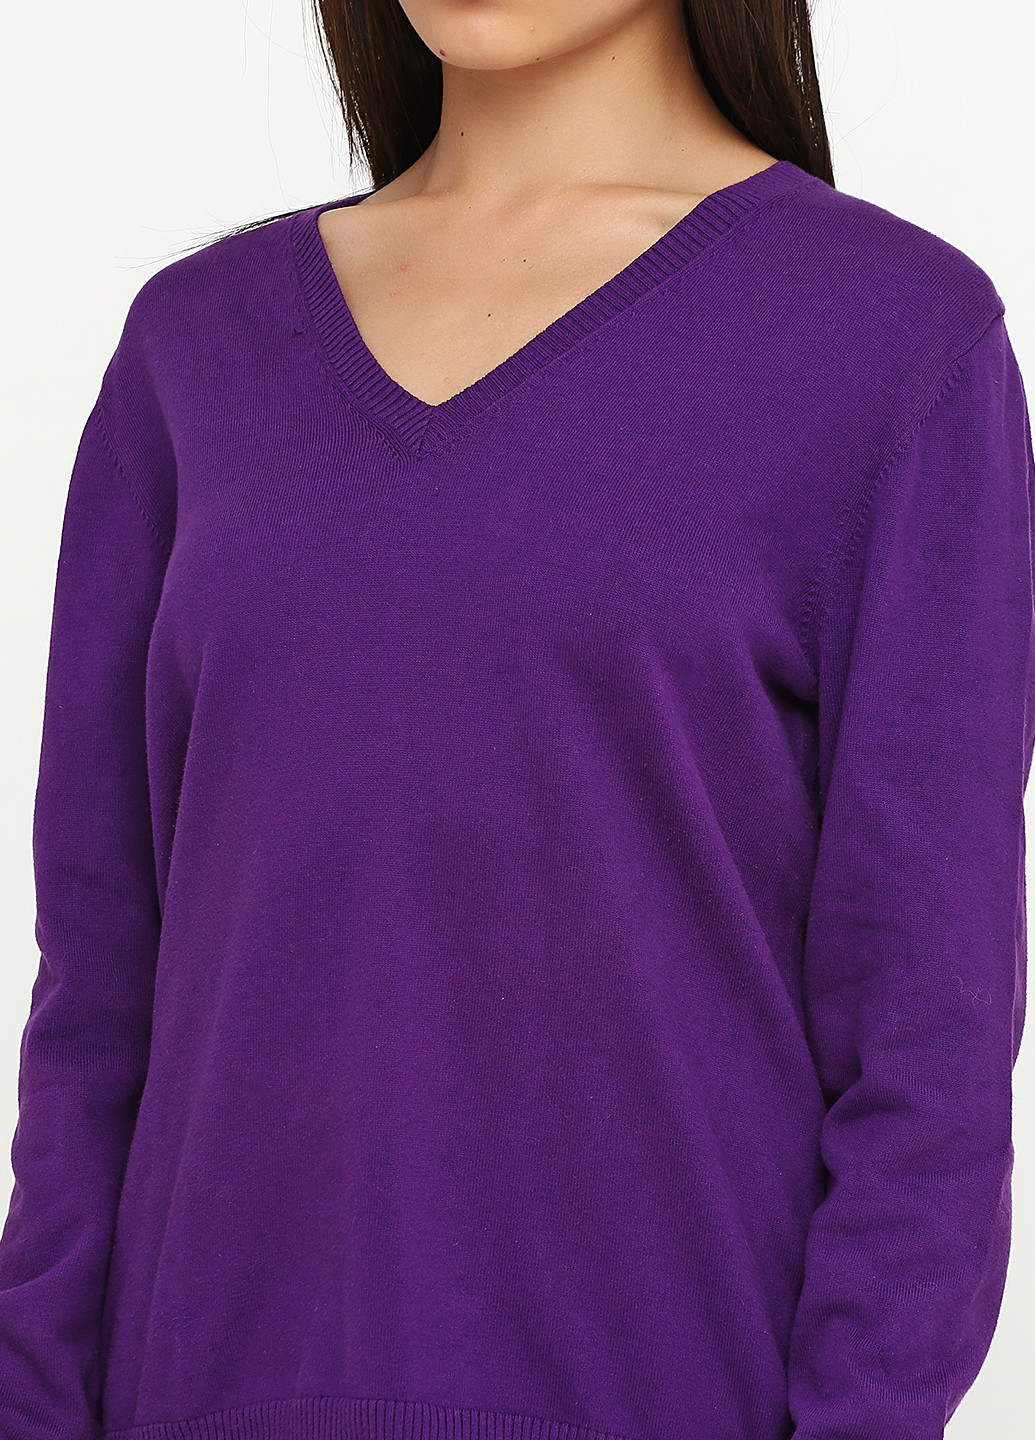 Темно-фиолетовый демисезонный пуловер пуловер Lands' End